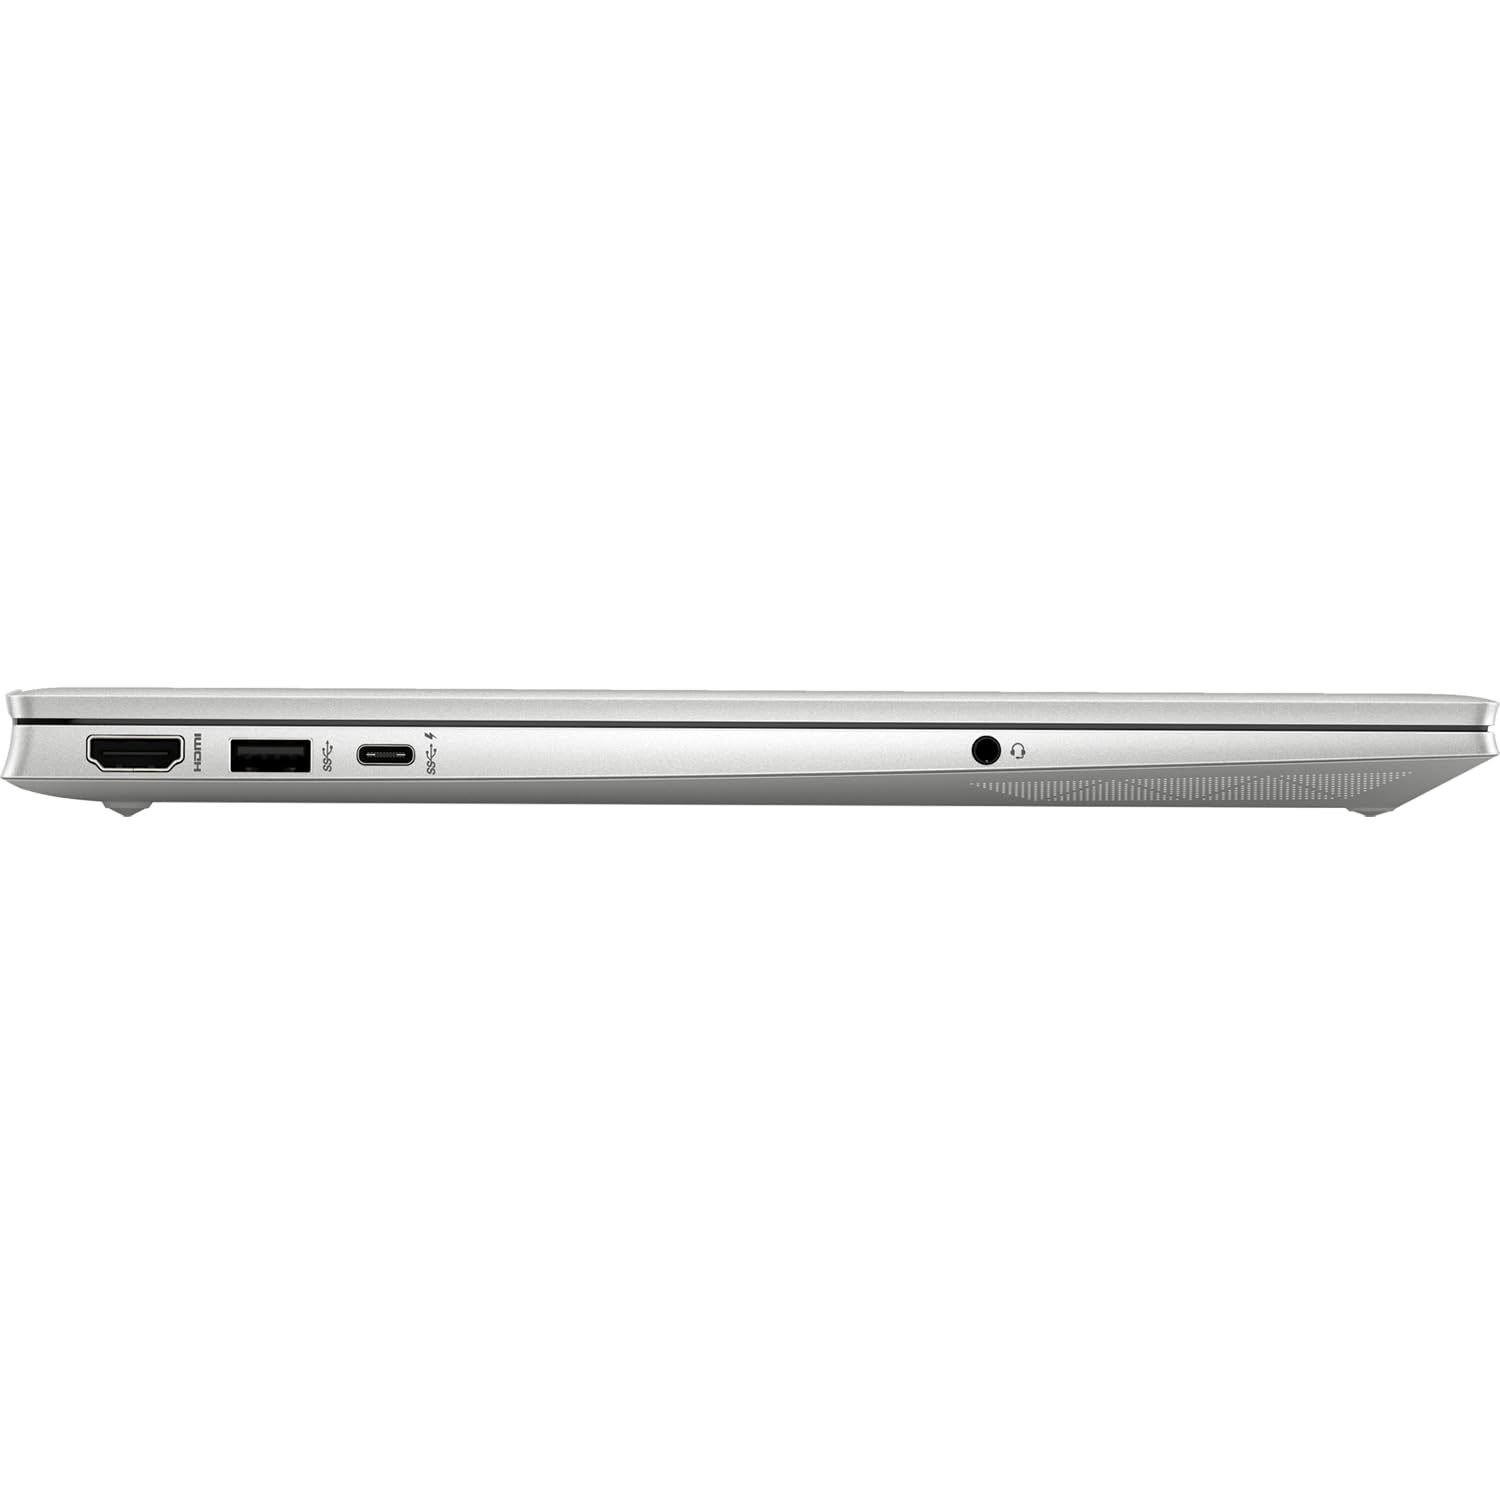 HP 2023 Latest Pavilion Business Laptop, 15.6